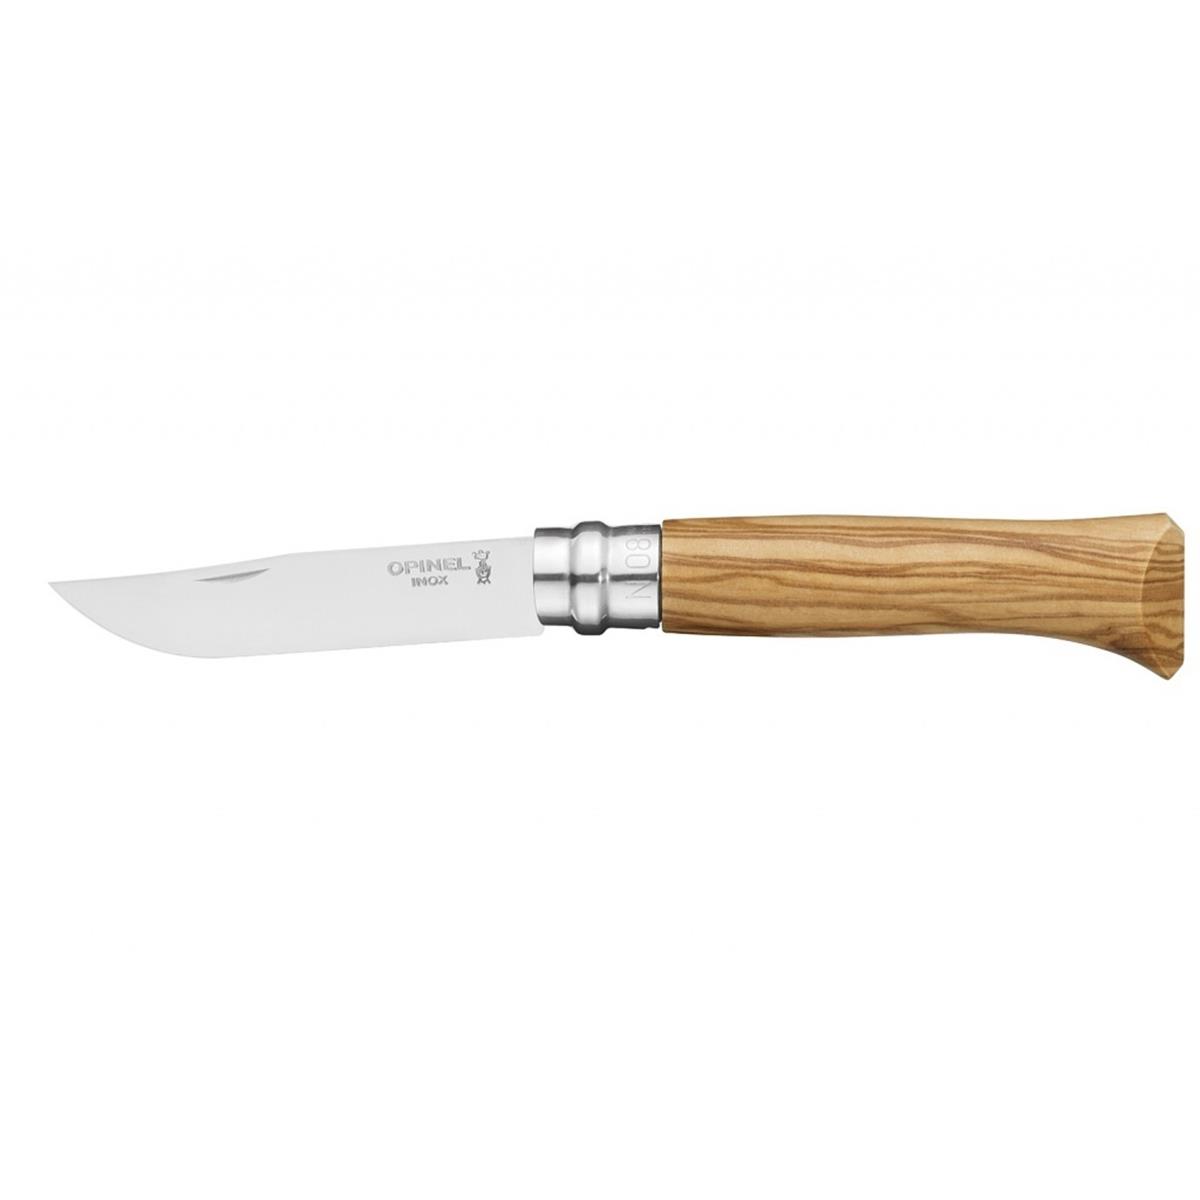 Нож филейный №8 VRI Folding Slim Olivewood нерж.сталь, длина клинка 8см (0011443) OPINEL филейный нож opinel